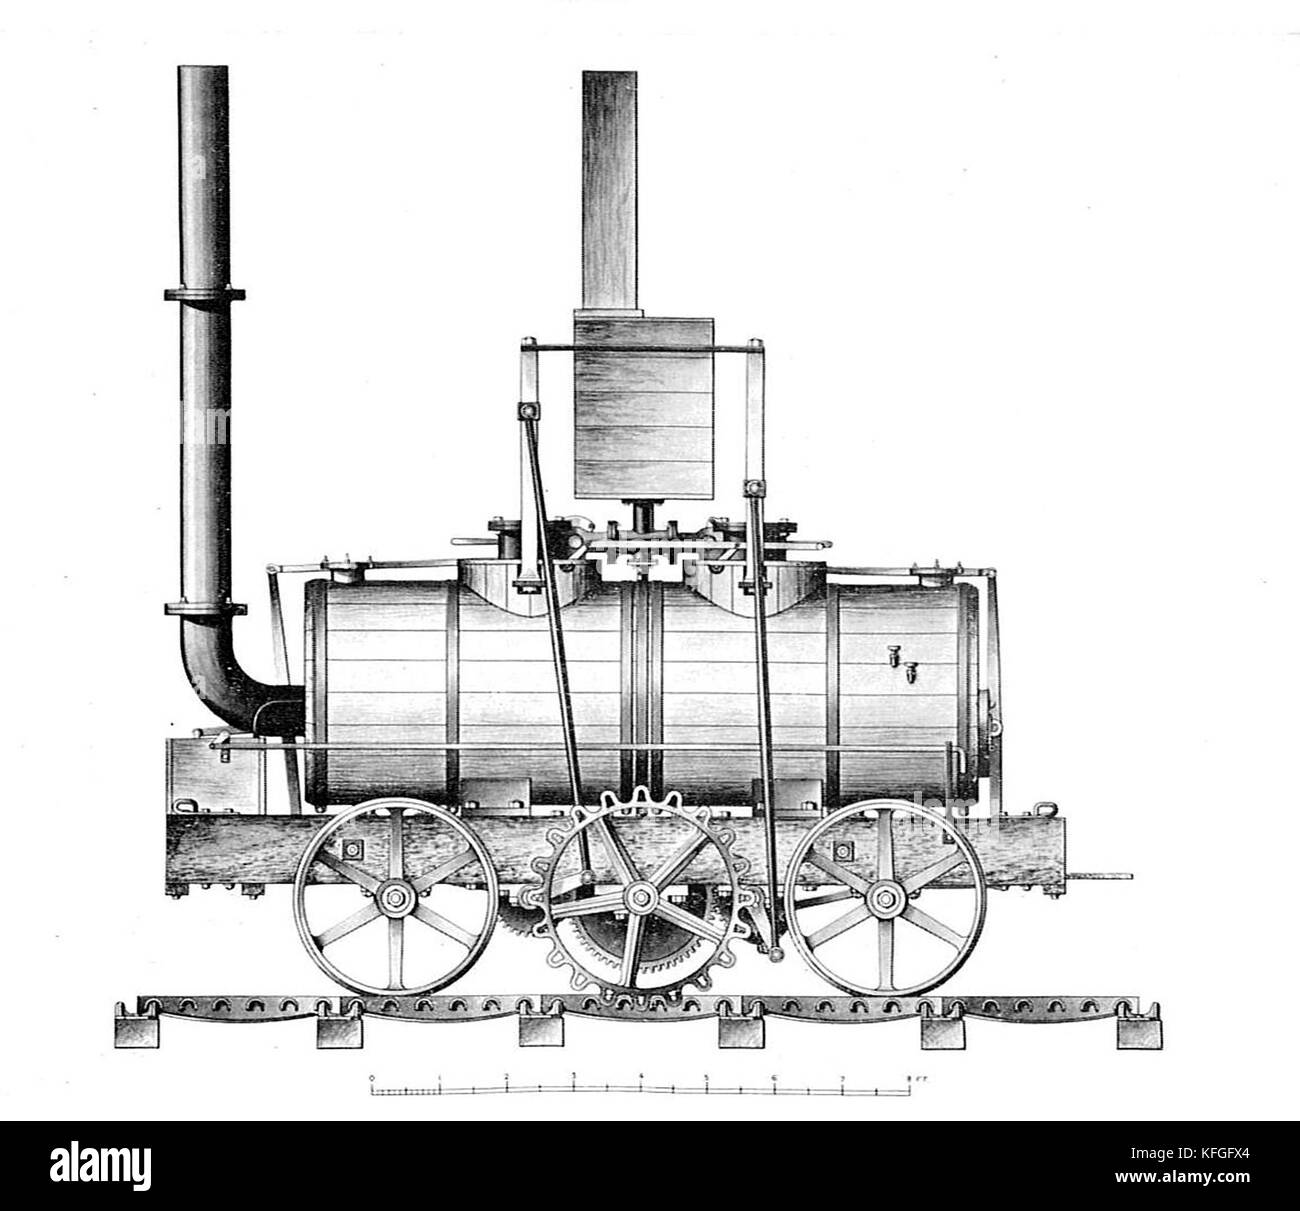 La locomotive Salamanca, première locomotive à vapeur commercialement réussie, construite en 1812 Banque D'Images